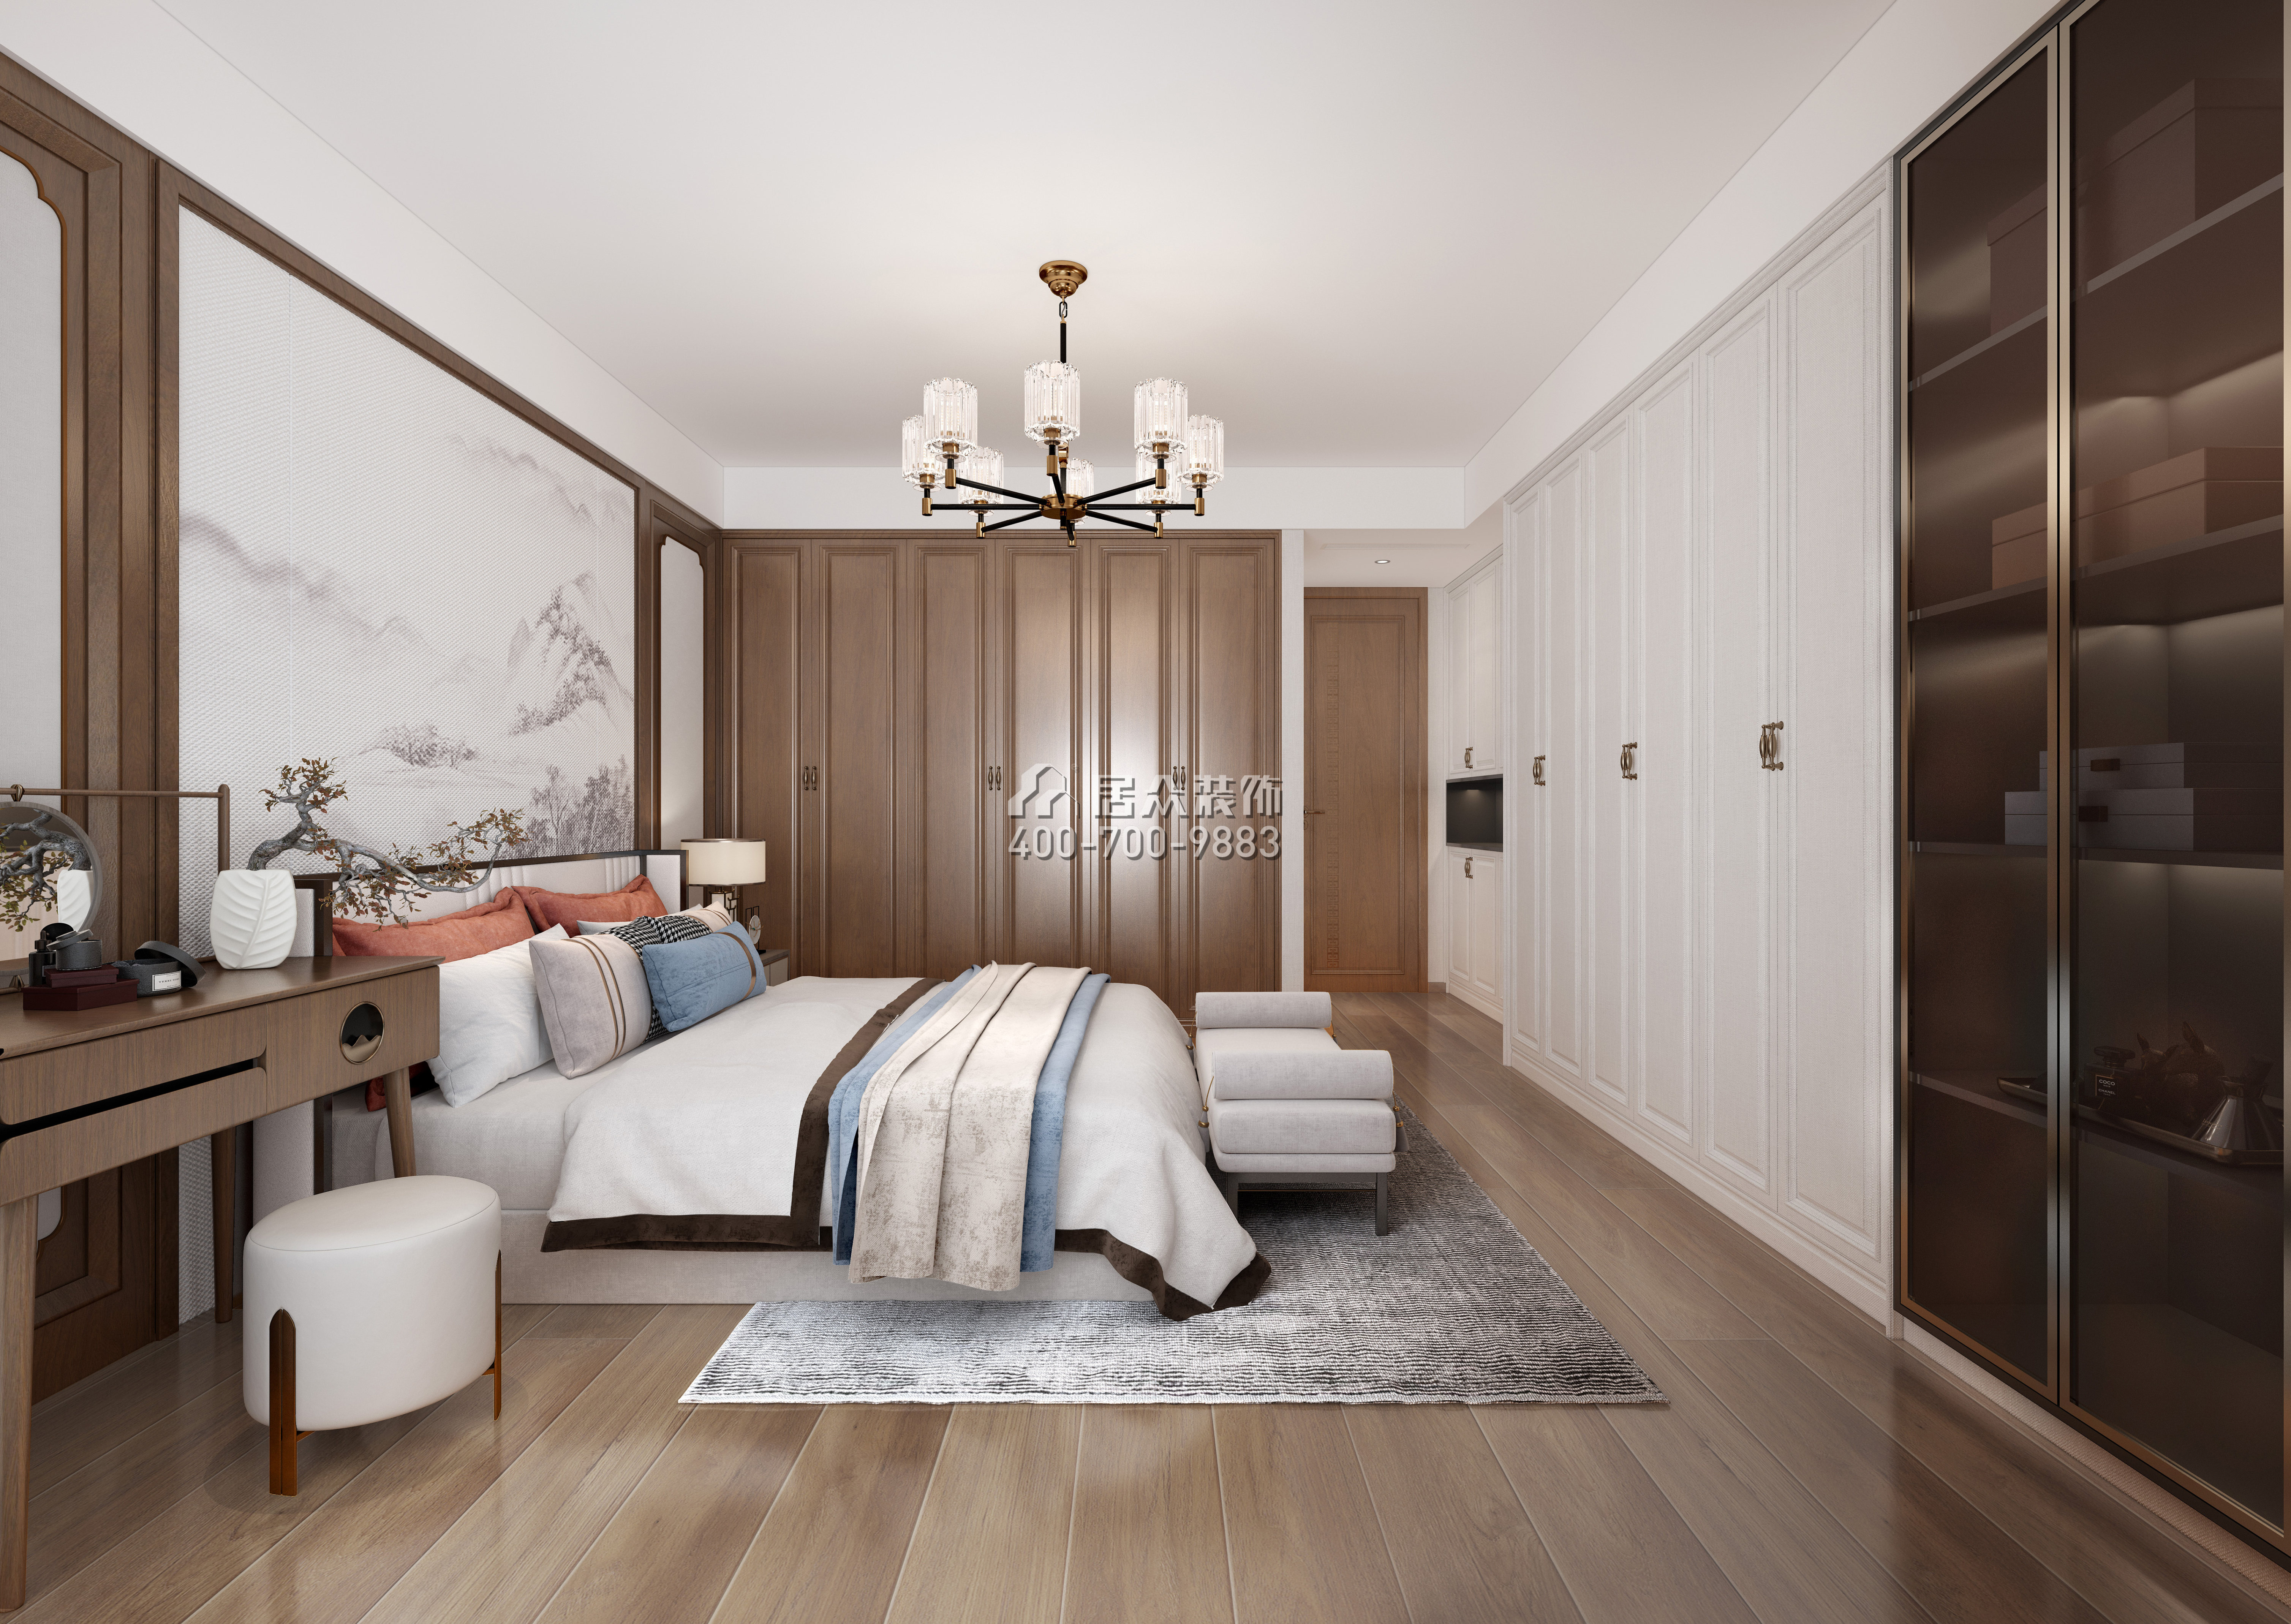 新天国际名苑150平方米中式风格平层户型卧室装修效果图